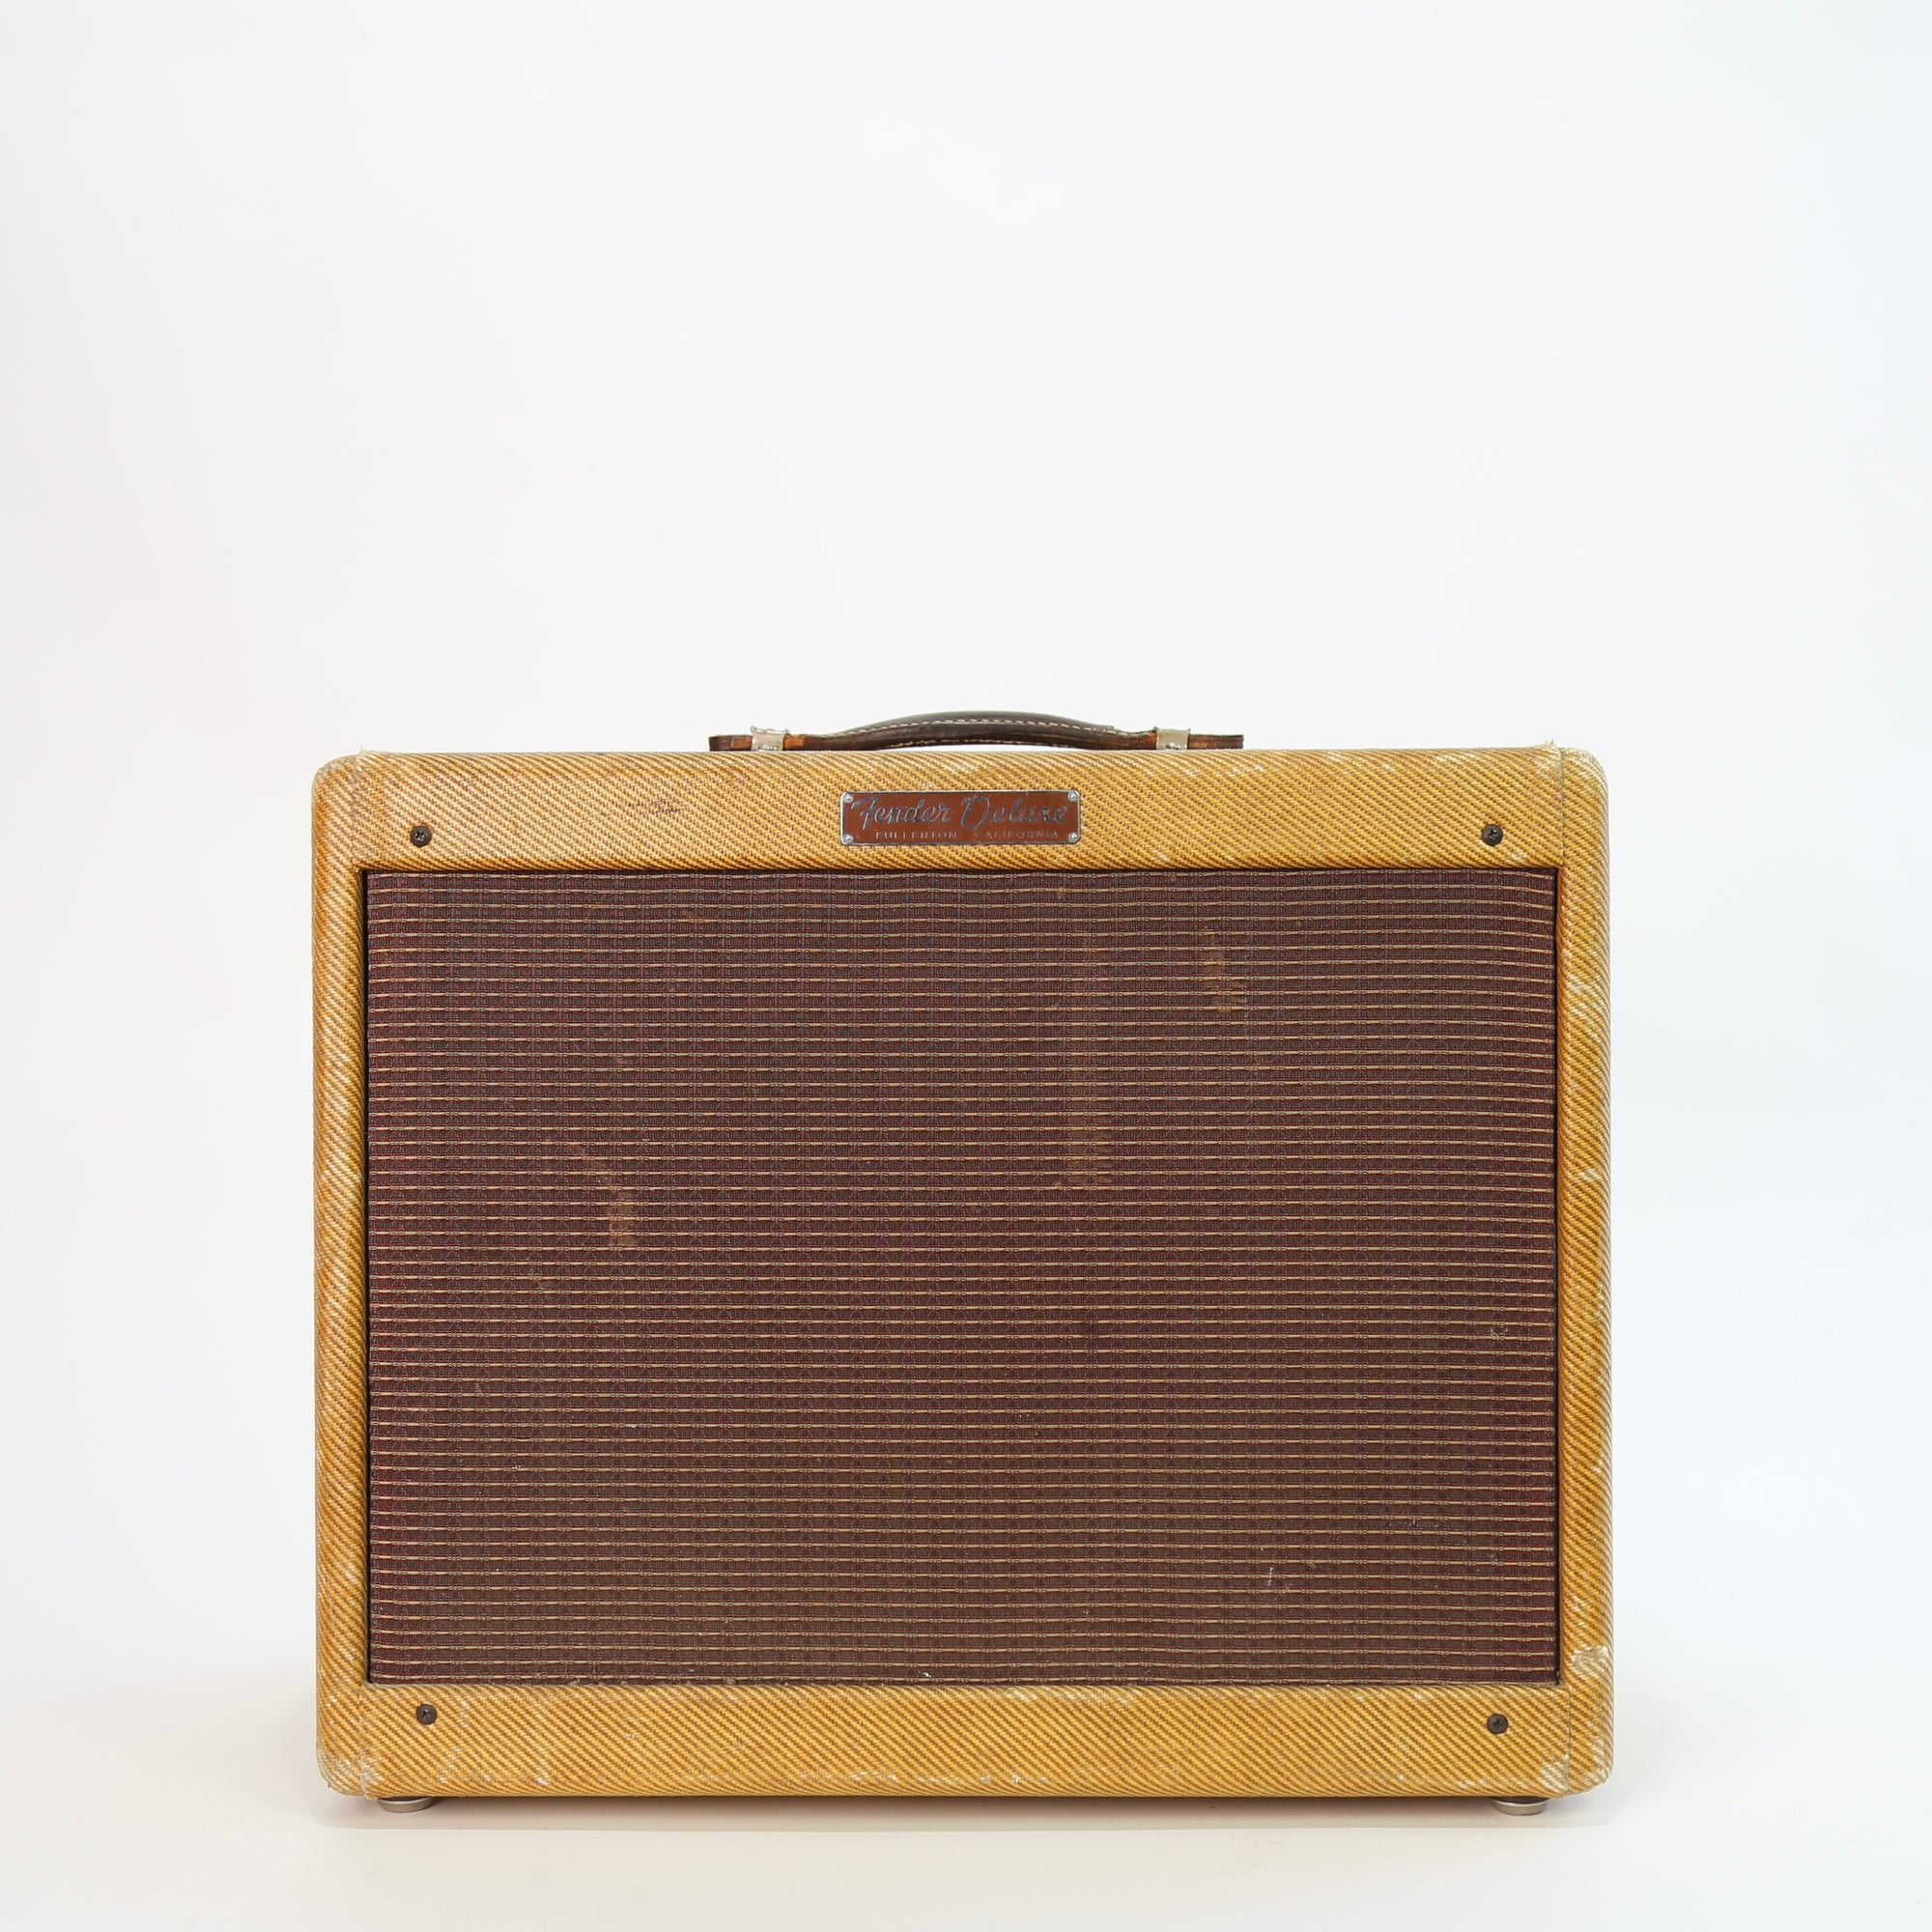 1958 Fender Deluxe Amp